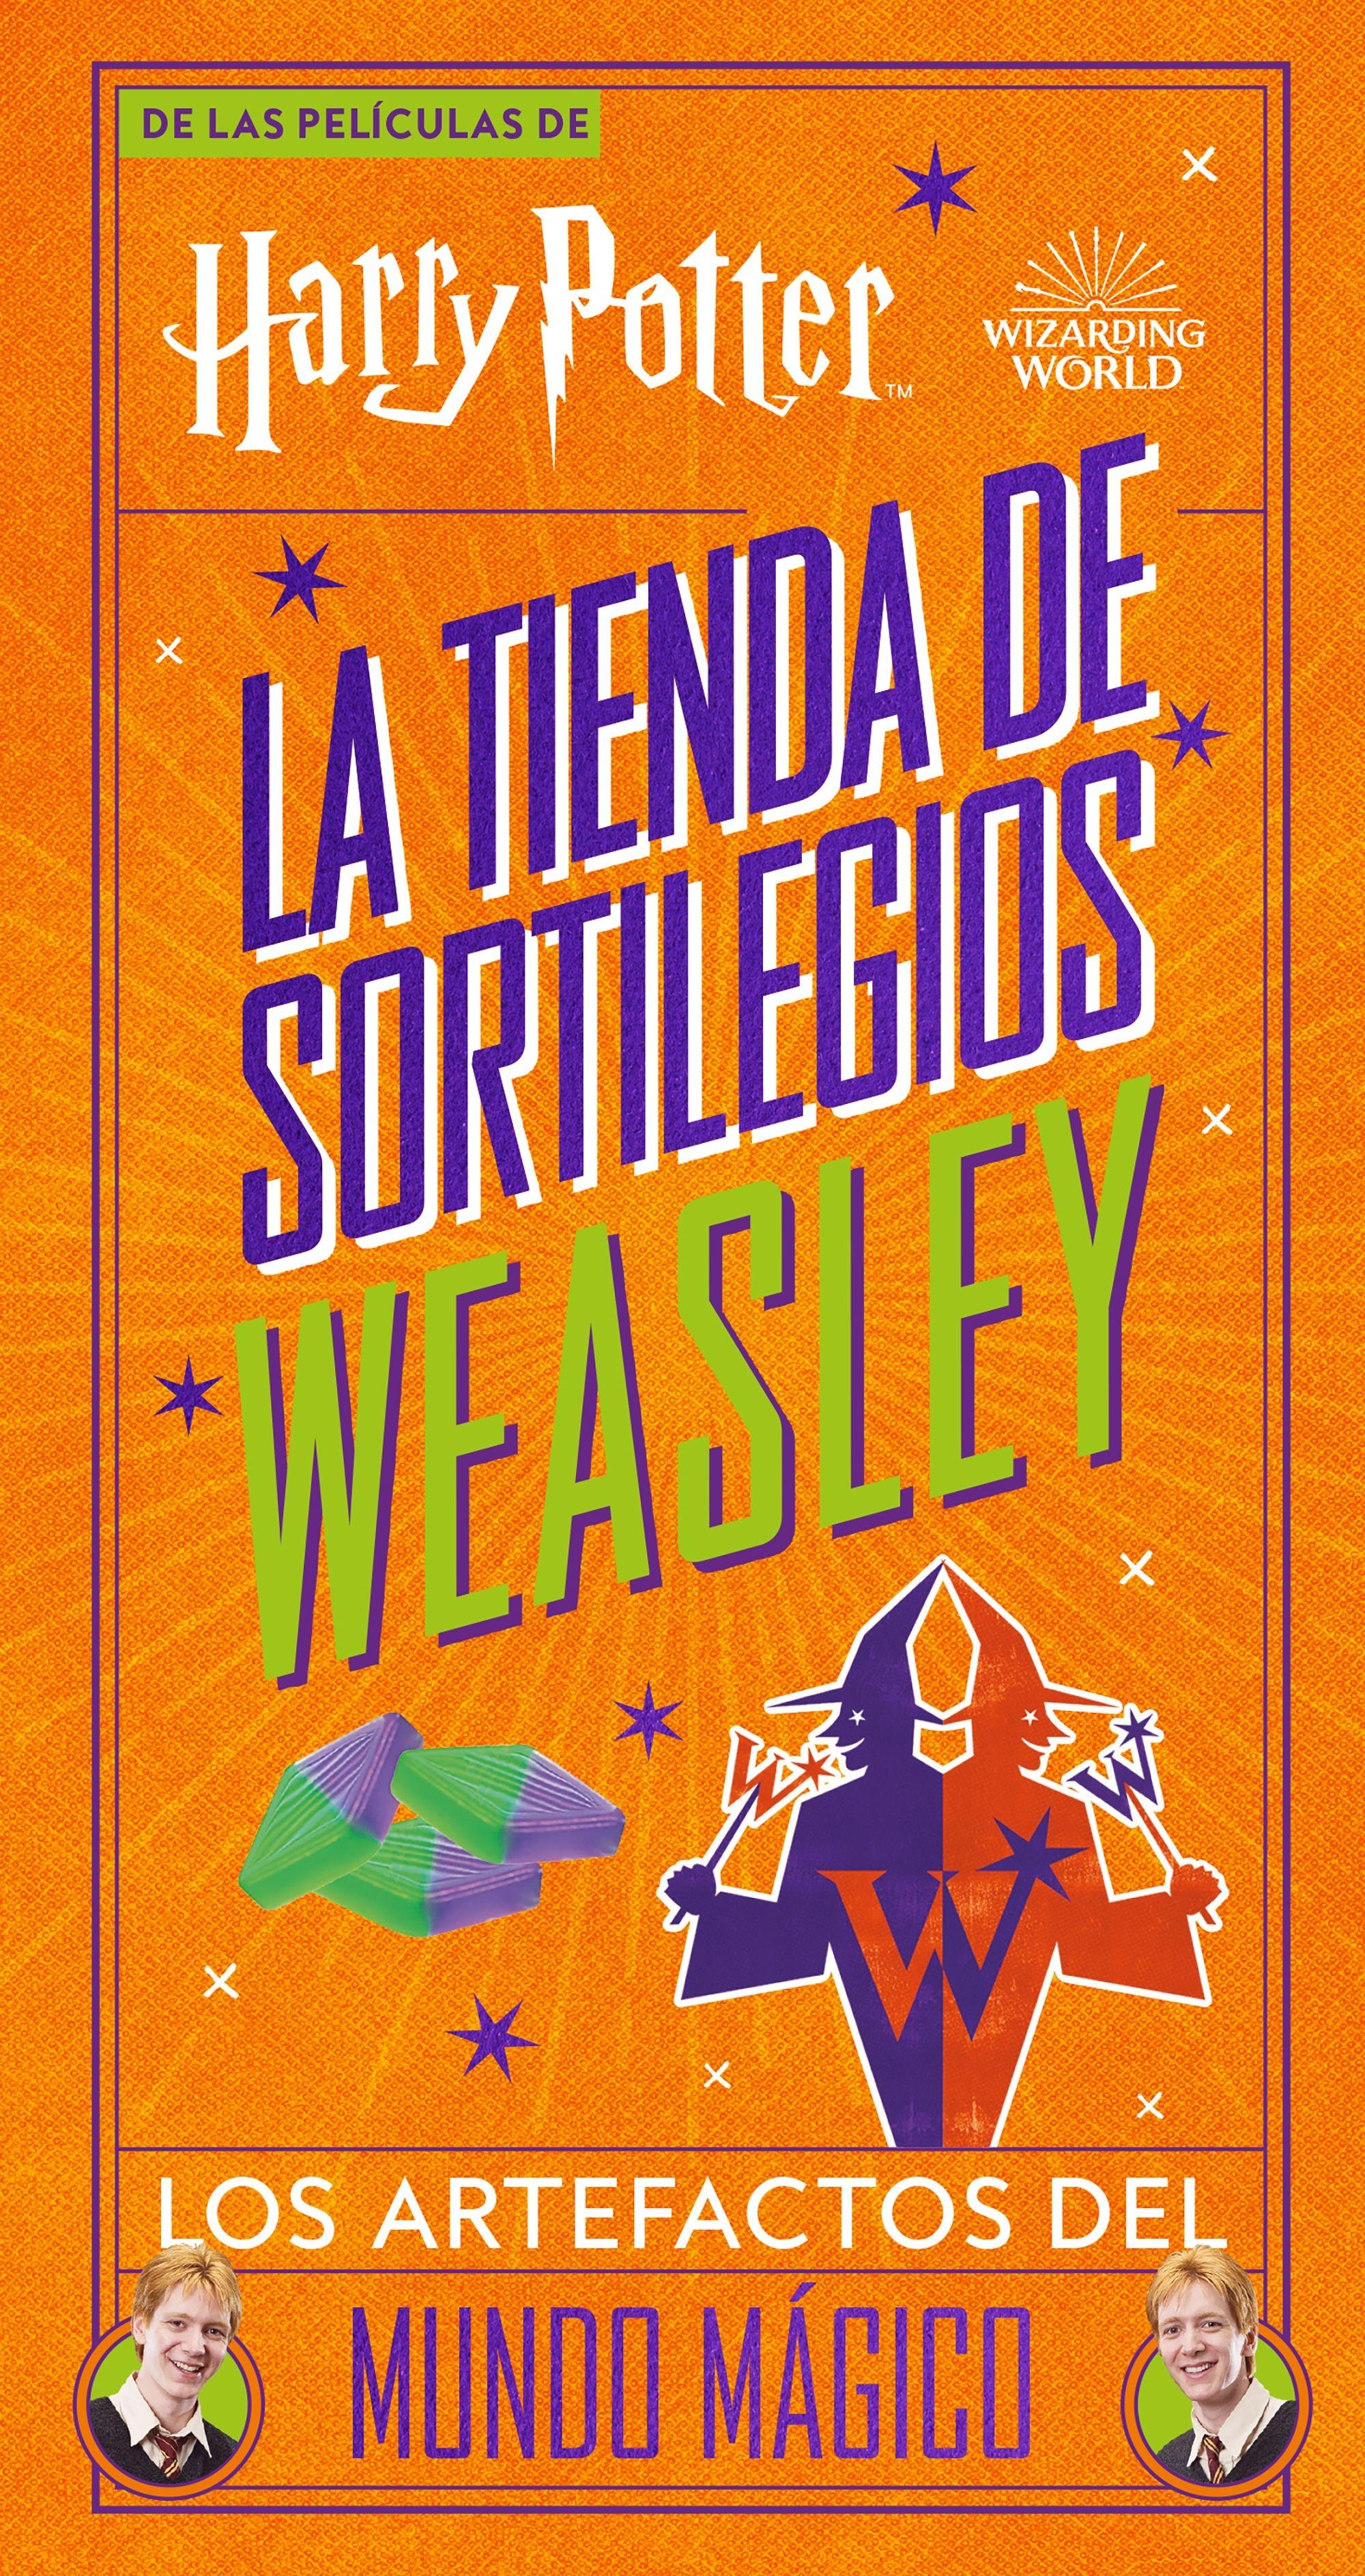 Harry Potter la Tienda de Sortilegos Weasley "Loa Artefactos del Mundo Mágico"